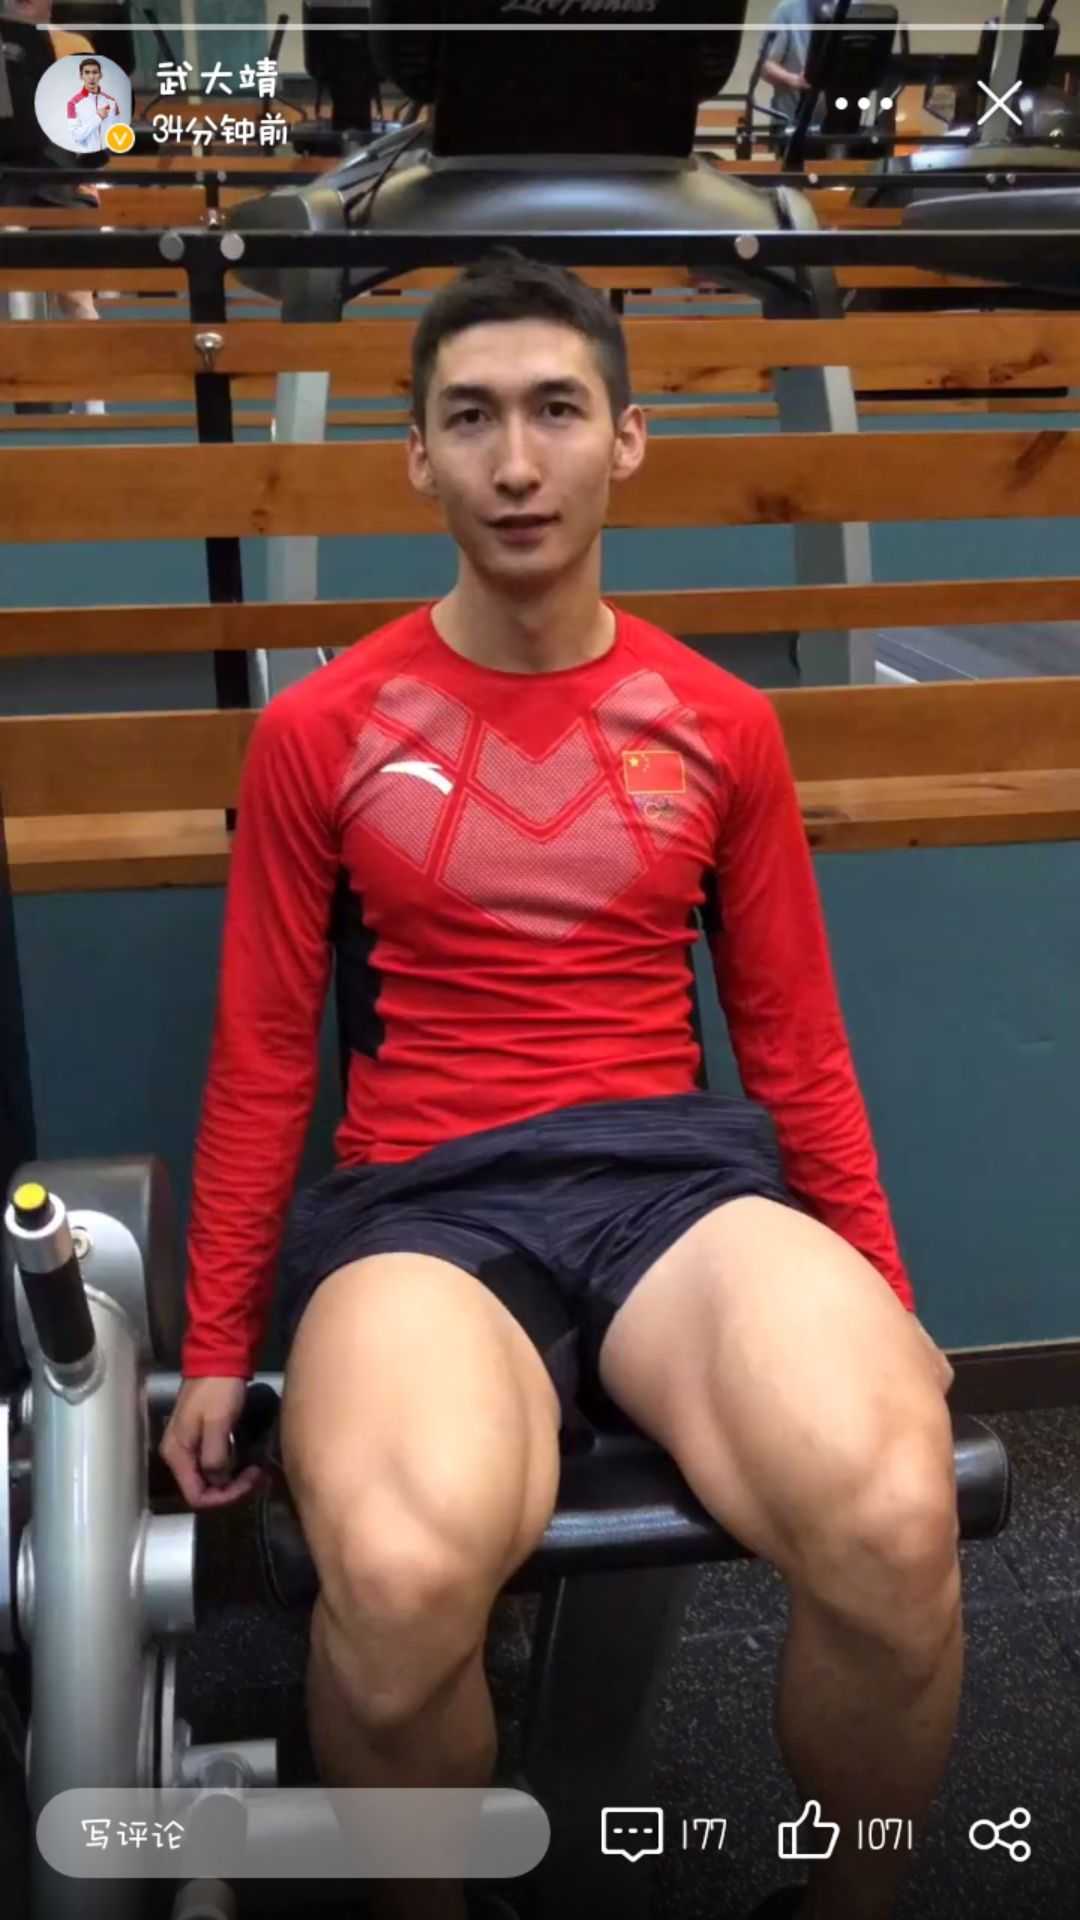 武大靖,短道速滑运动员 这个大腿的腿部肌肉哦 显示全部